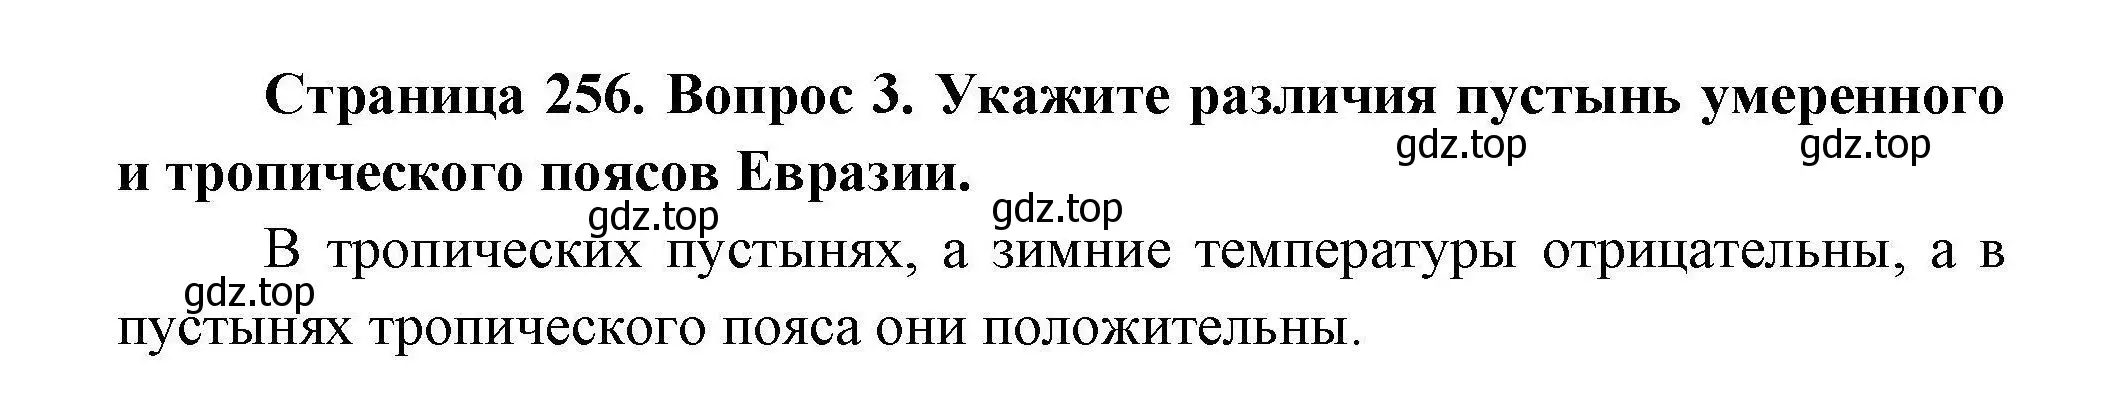 Решение  ☆(3) (страница 256) гдз по географии 7 класс Коринская, Душина, учебник